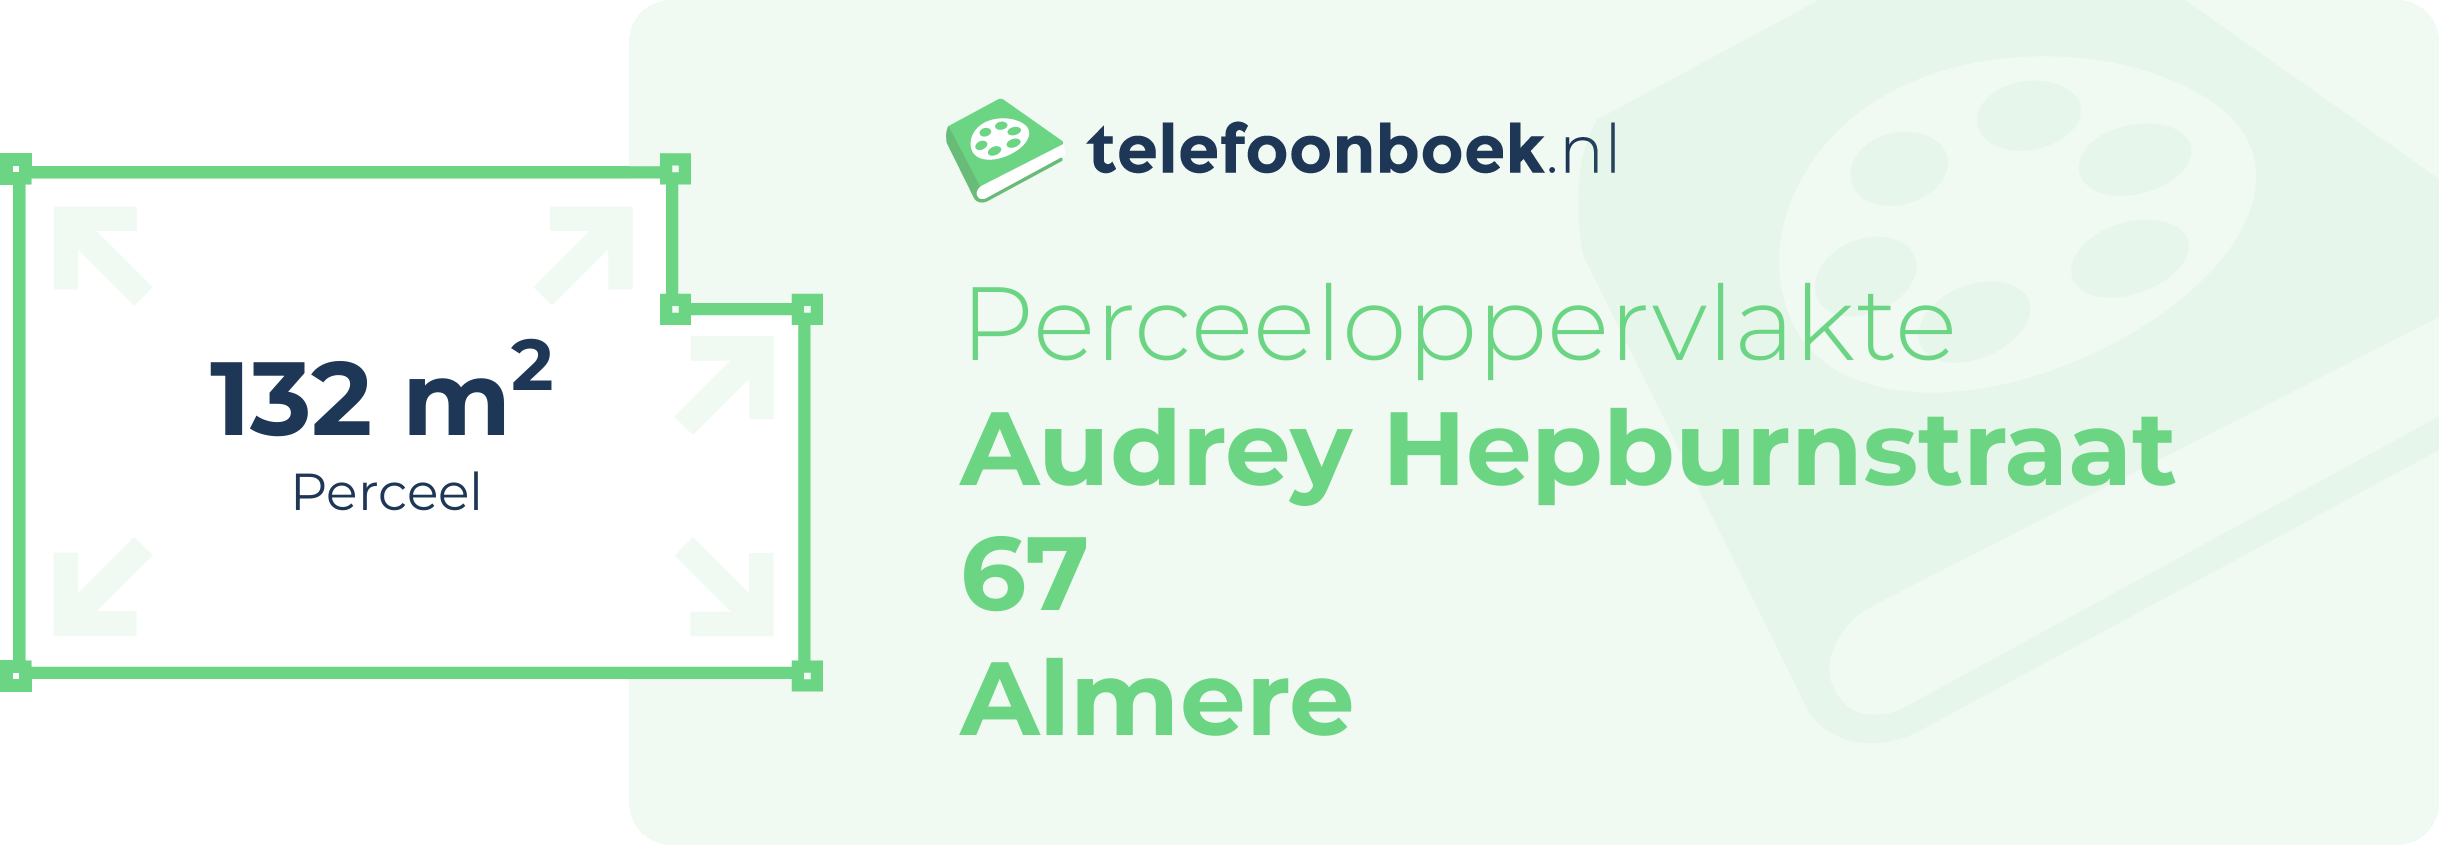 Perceeloppervlakte Audrey Hepburnstraat 67 Almere